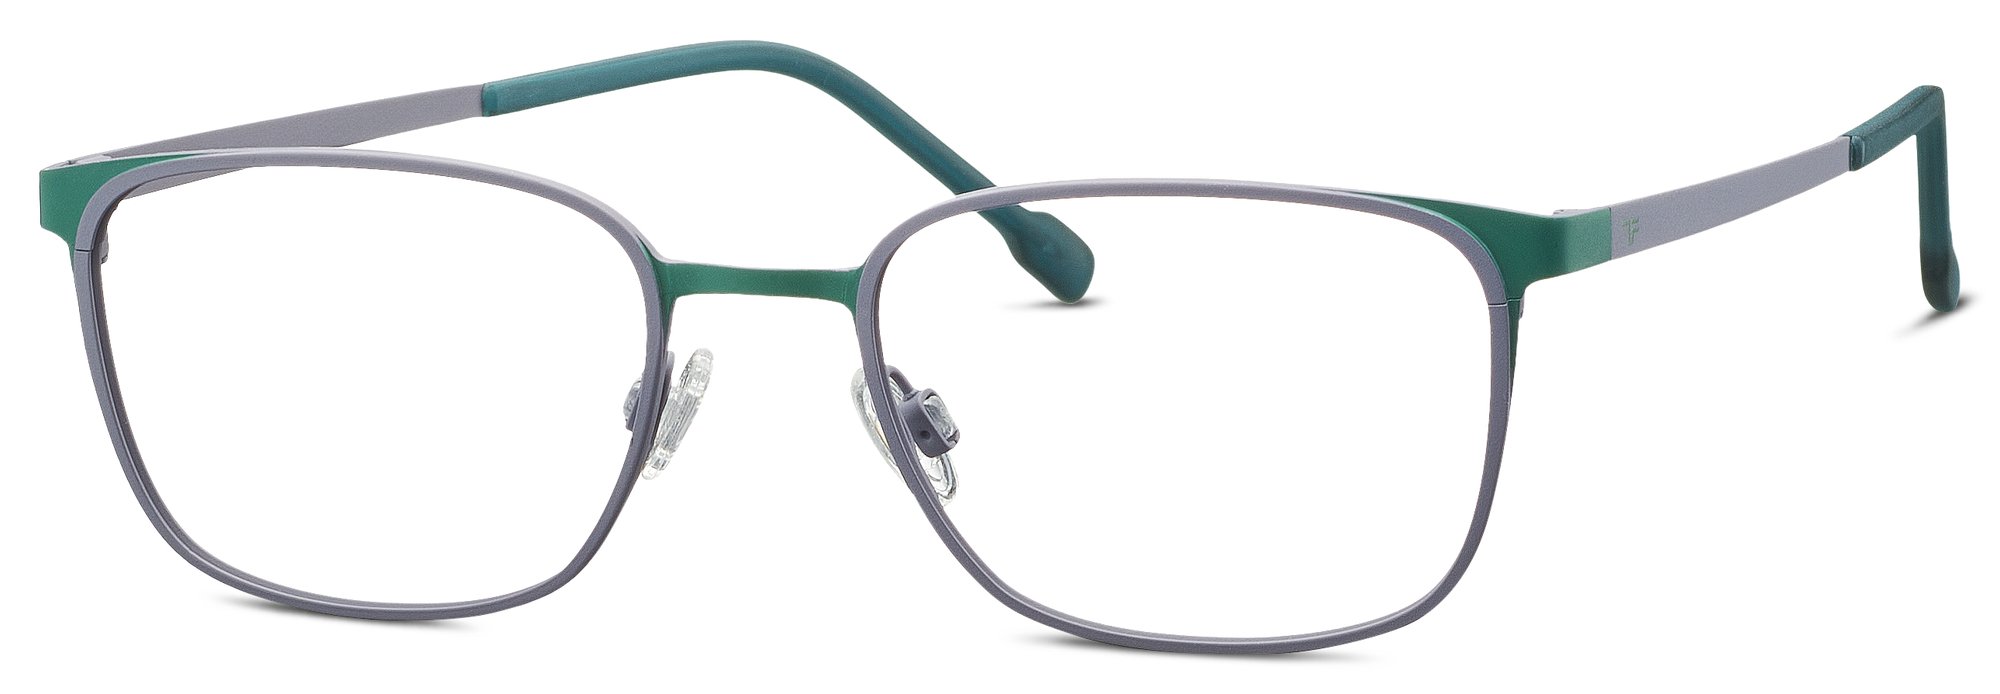 Das Bild zeigt die Korrektionsbrille 830137 40 von der Marke Titanflex Kids in grau.